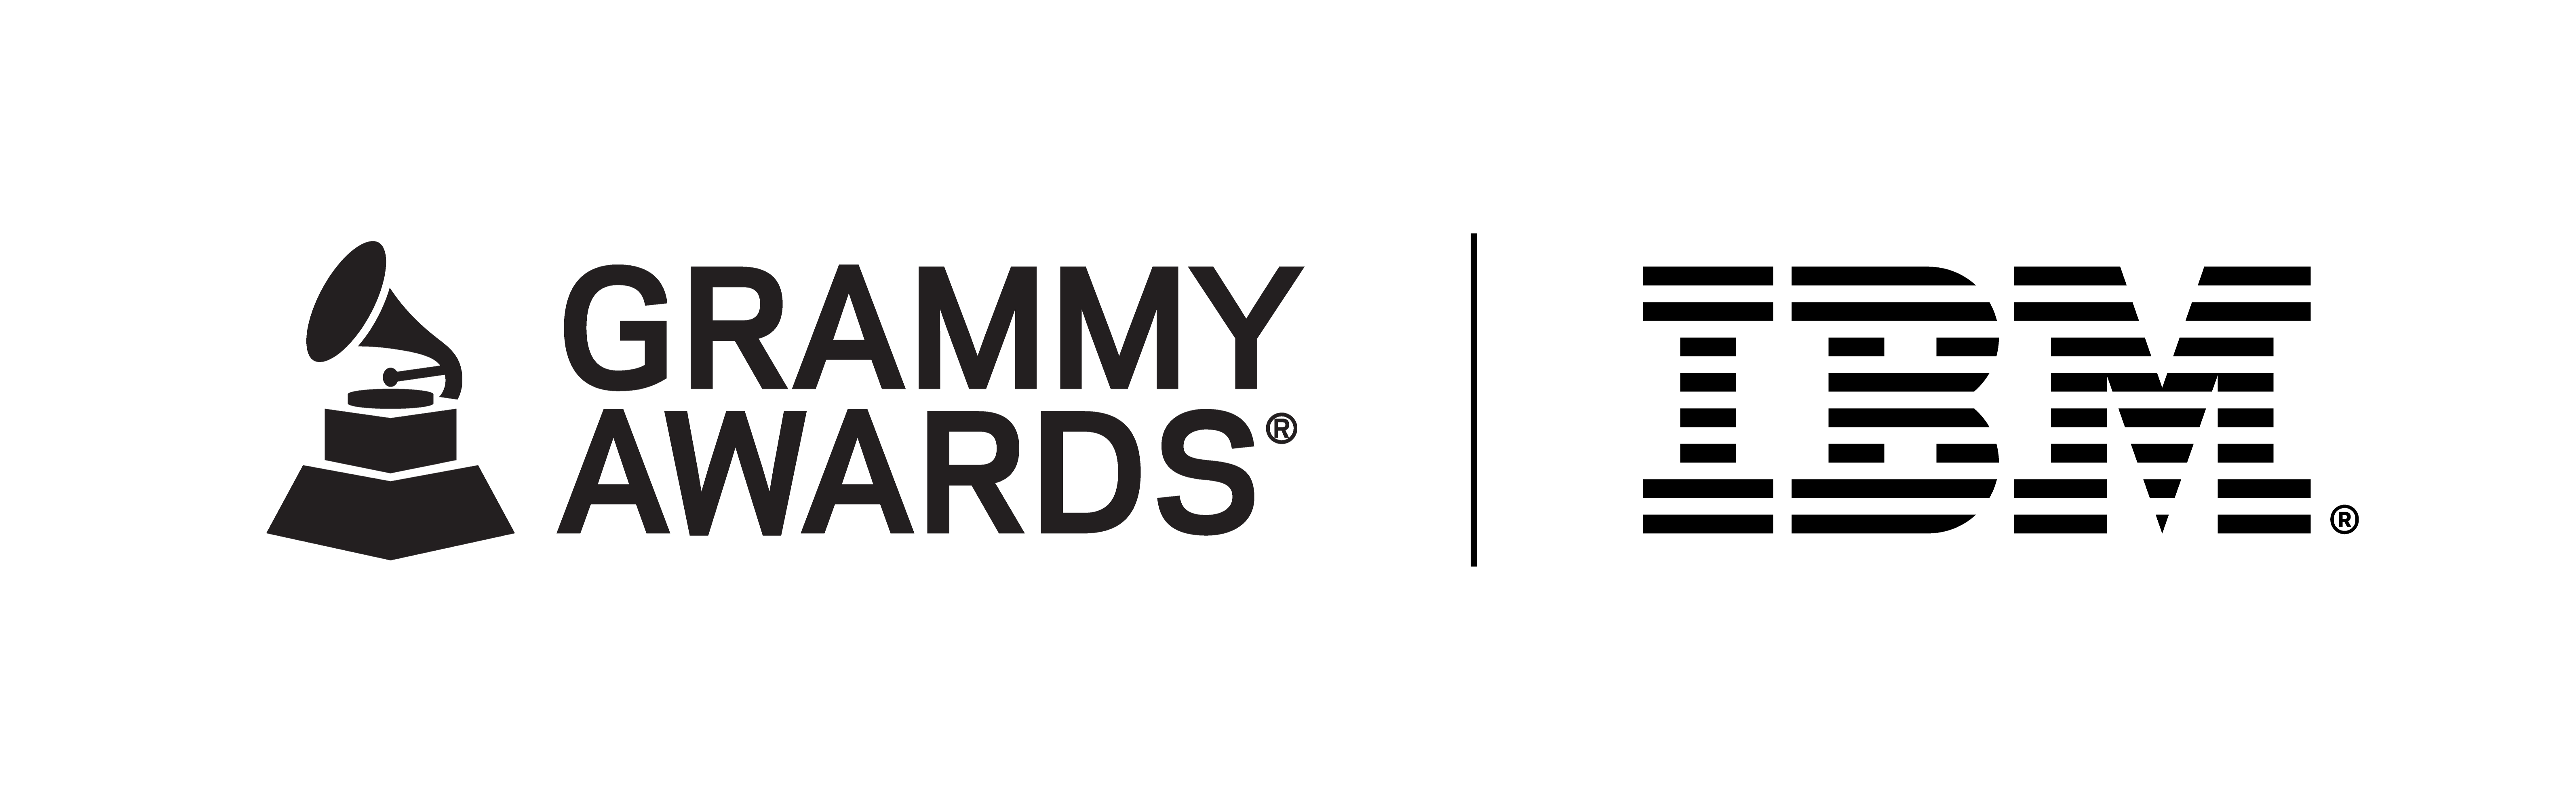 Lockup del logo degli IBM-GRAMMY Awards con un grammofono